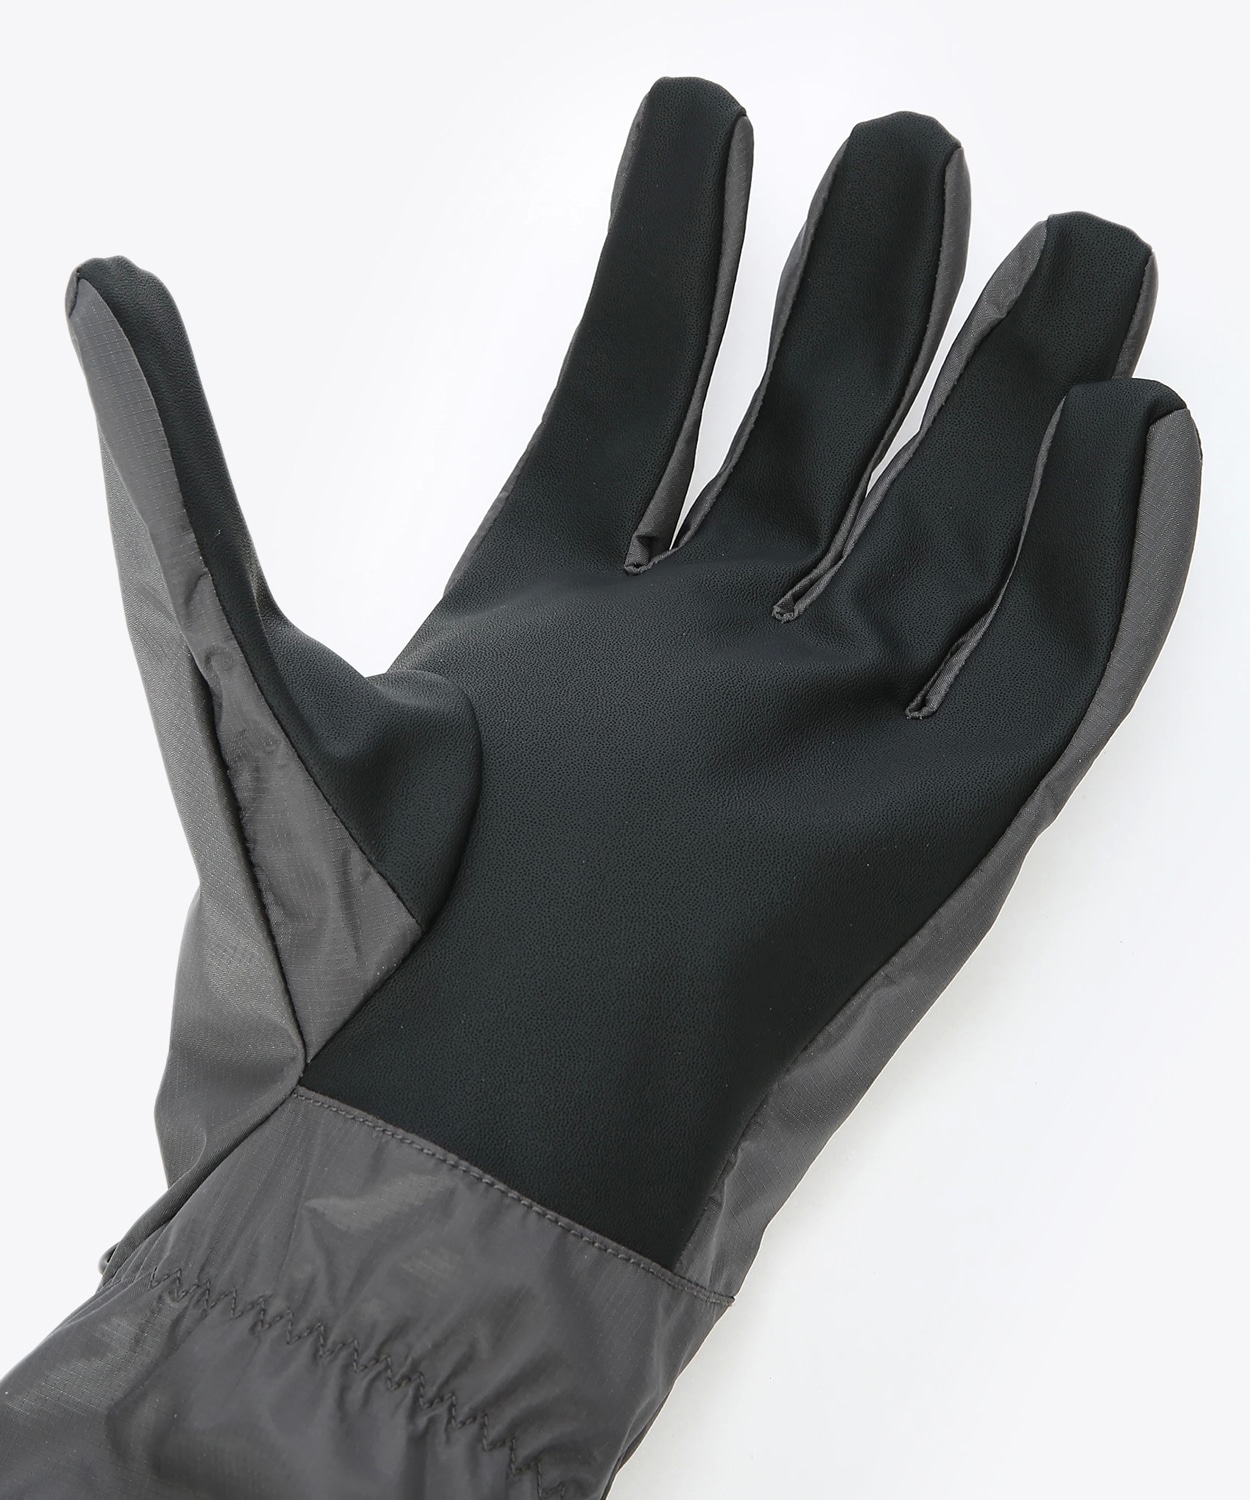 ノースフェイス メンズ 手袋 アクセサリー Gloves Black メンズ手袋